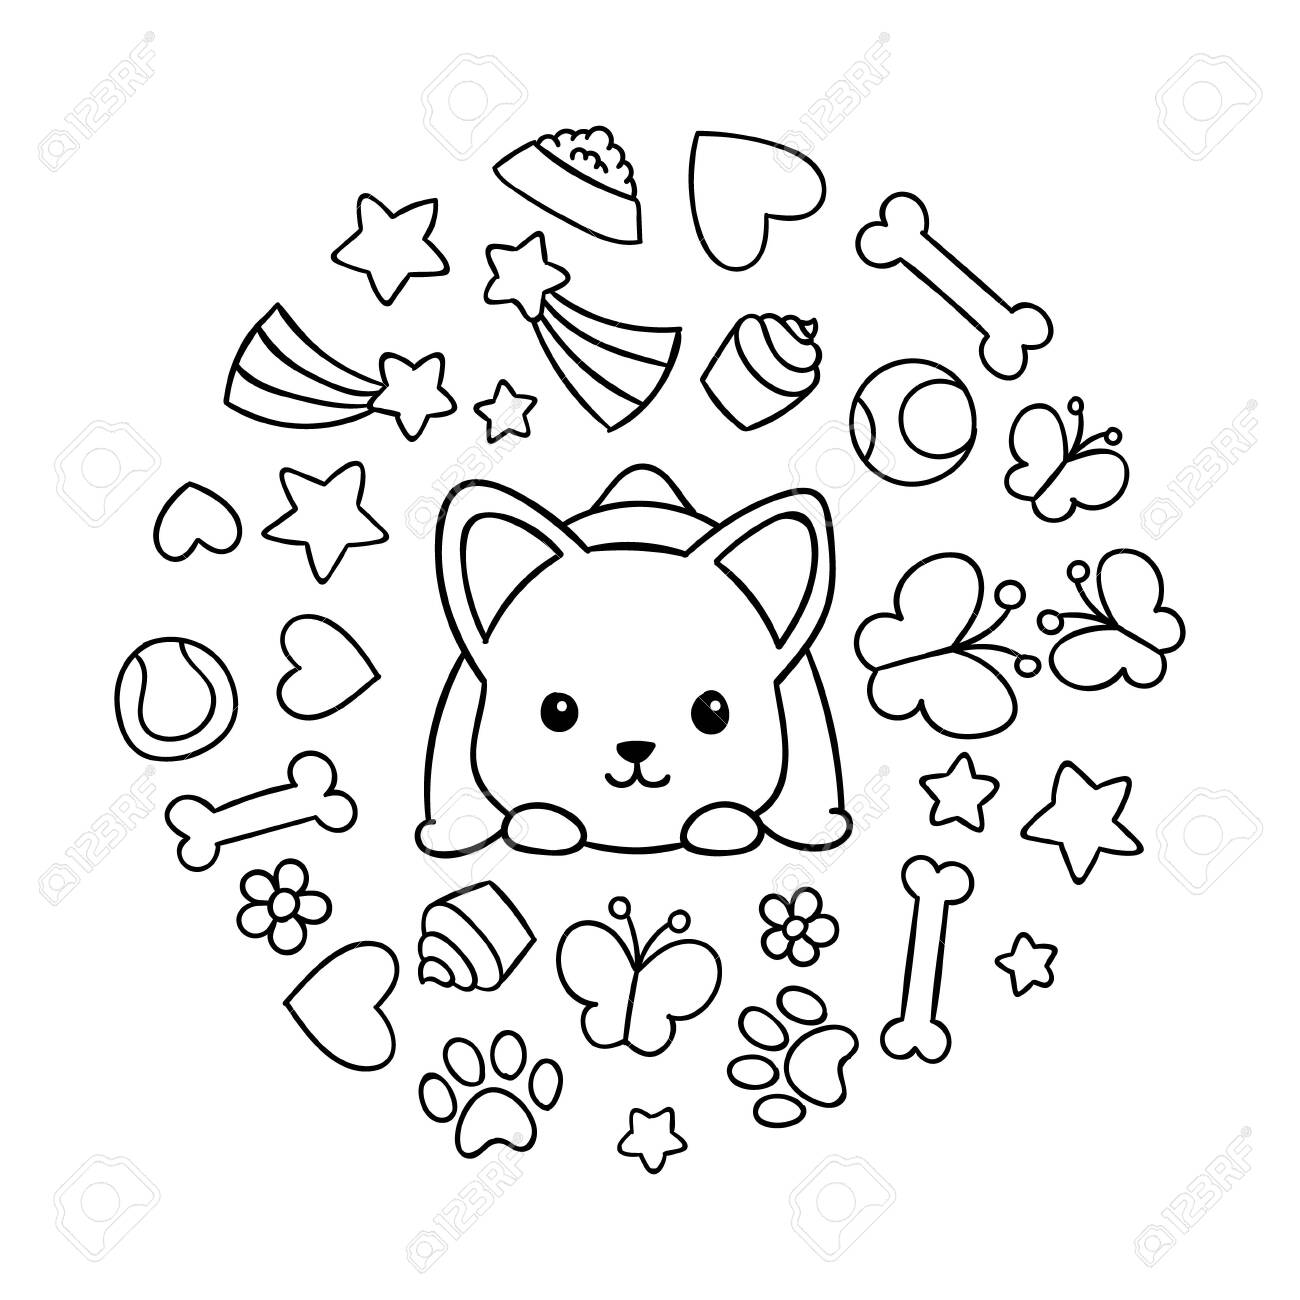 Coloring pages black and white cute kawaii hand drawn corgi dog doodles circle print print royalty free svg cliparts vectors and stock illustration image